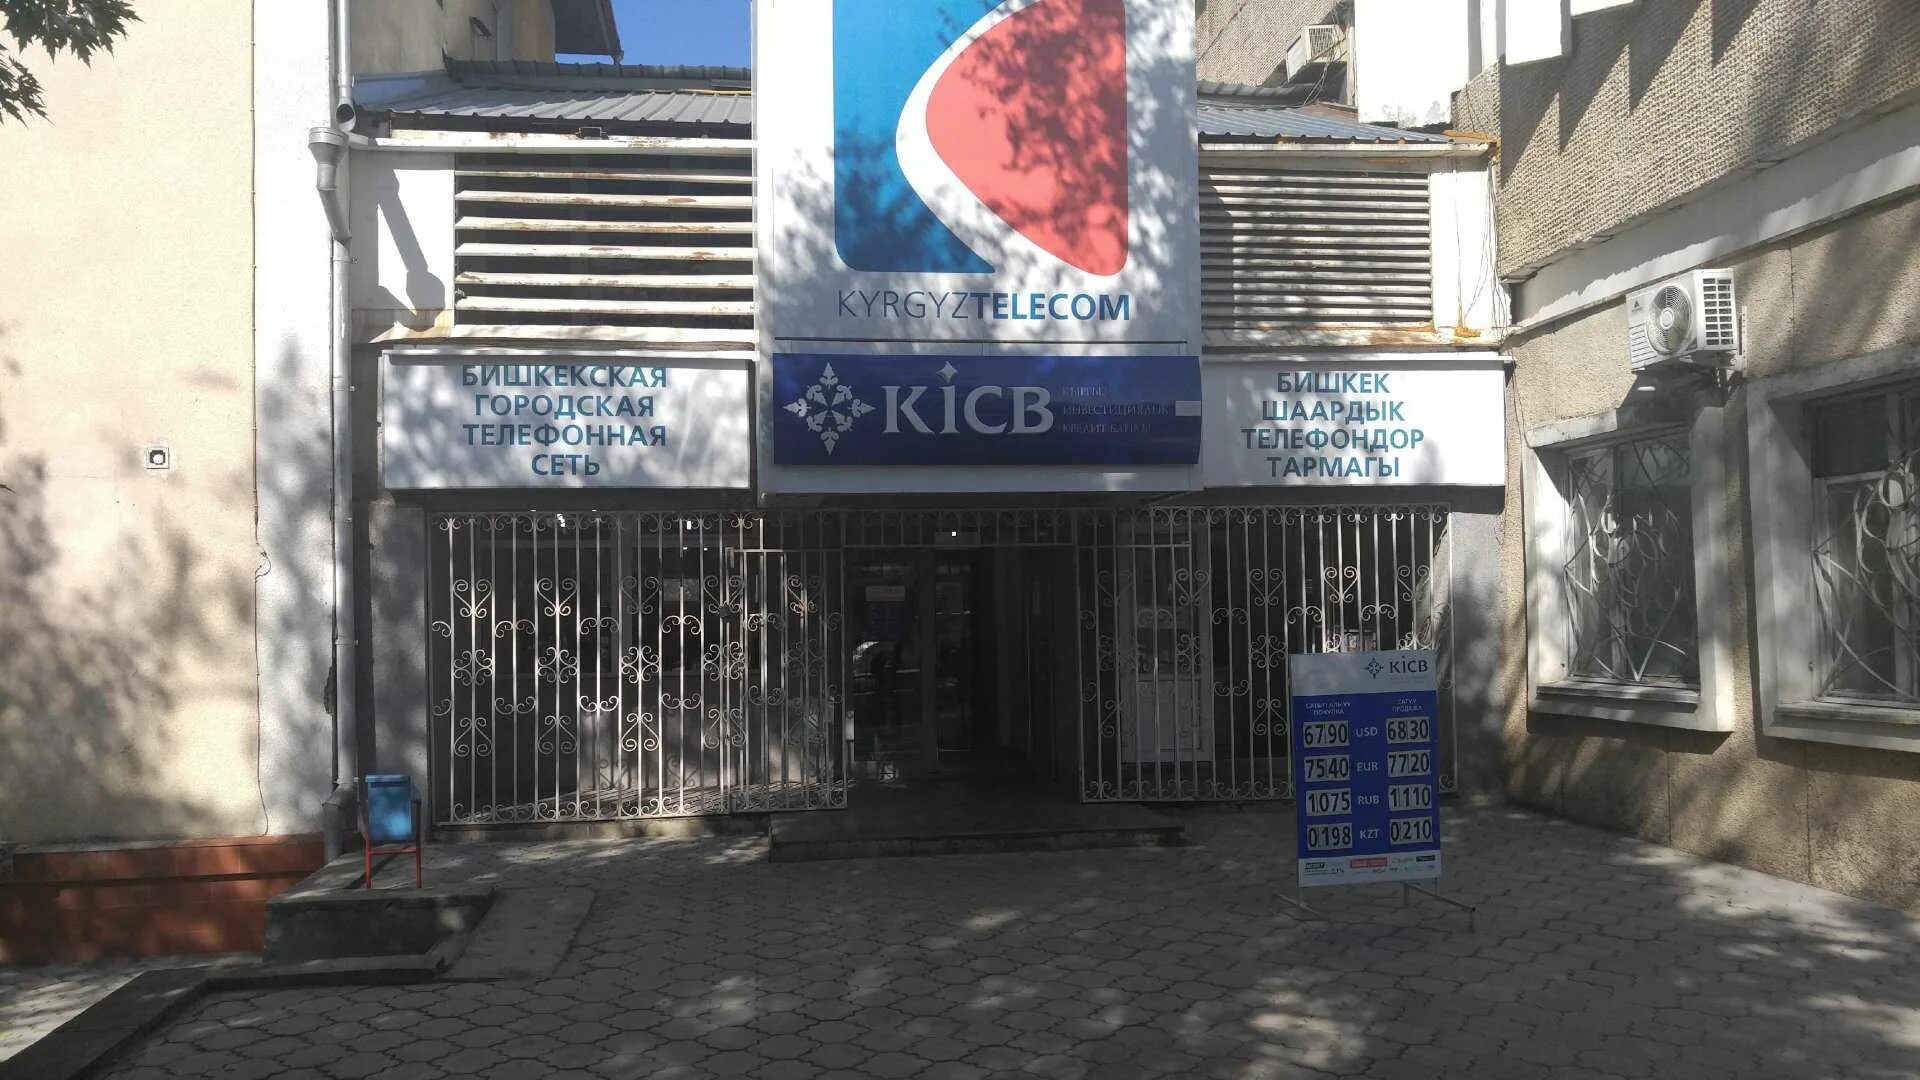 Банк Бишкек. KICB банк Бишкек. Терминал KICB. Банкомат Кыргызстан банк.